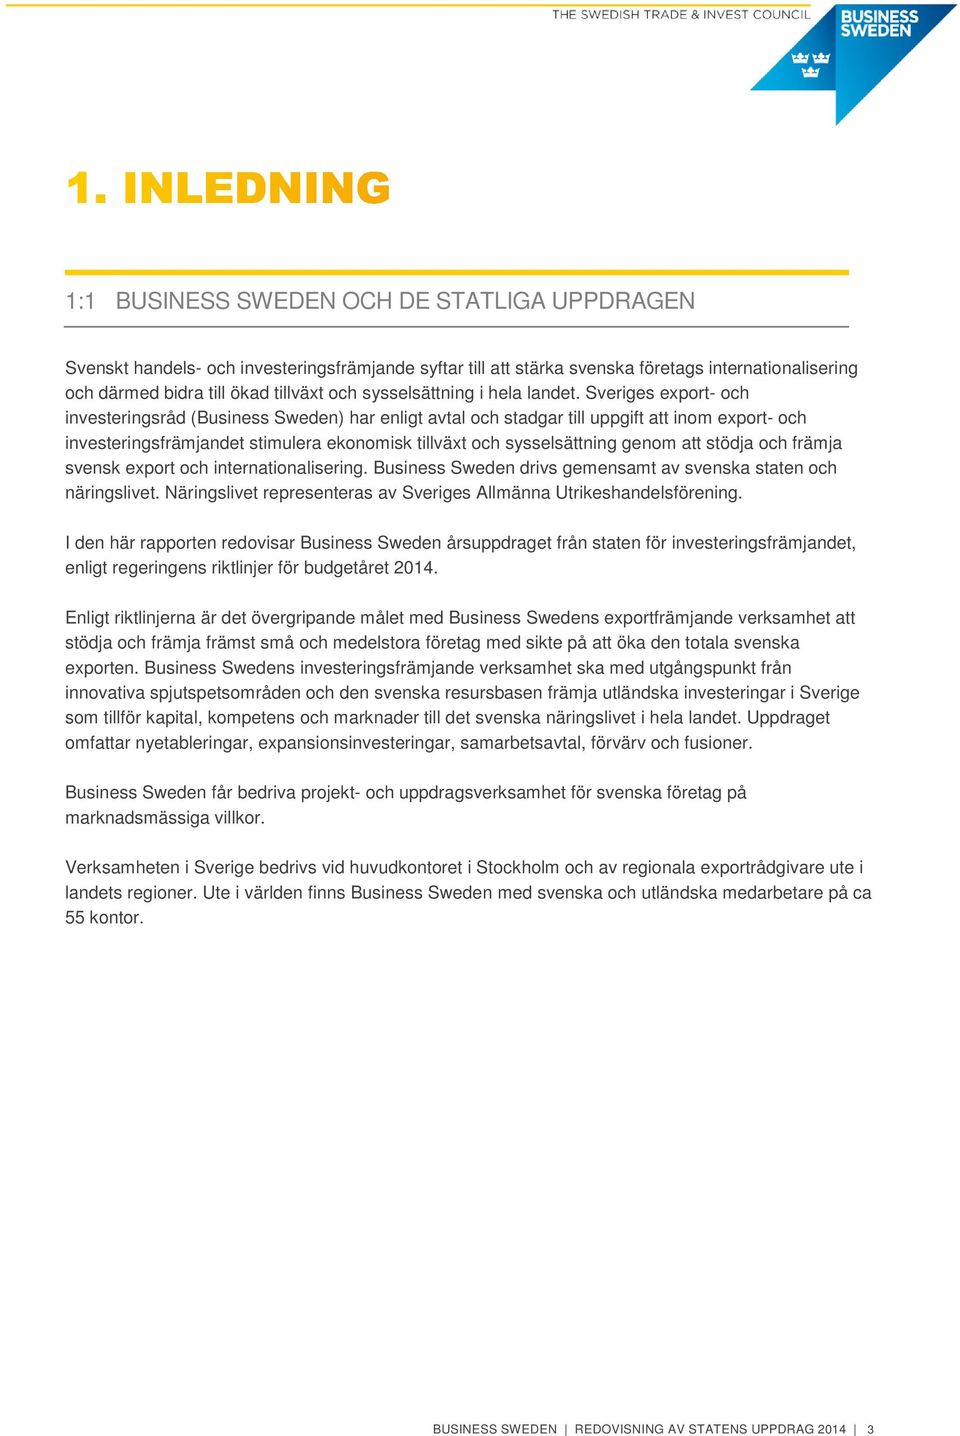 Sveriges export- och investeringsråd (Business Sweden) har enligt avtal och stadgar till uppgift att inom export- och investeringsfrämjandet stimulera ekonomisk tillväxt och sysselsättning genom att